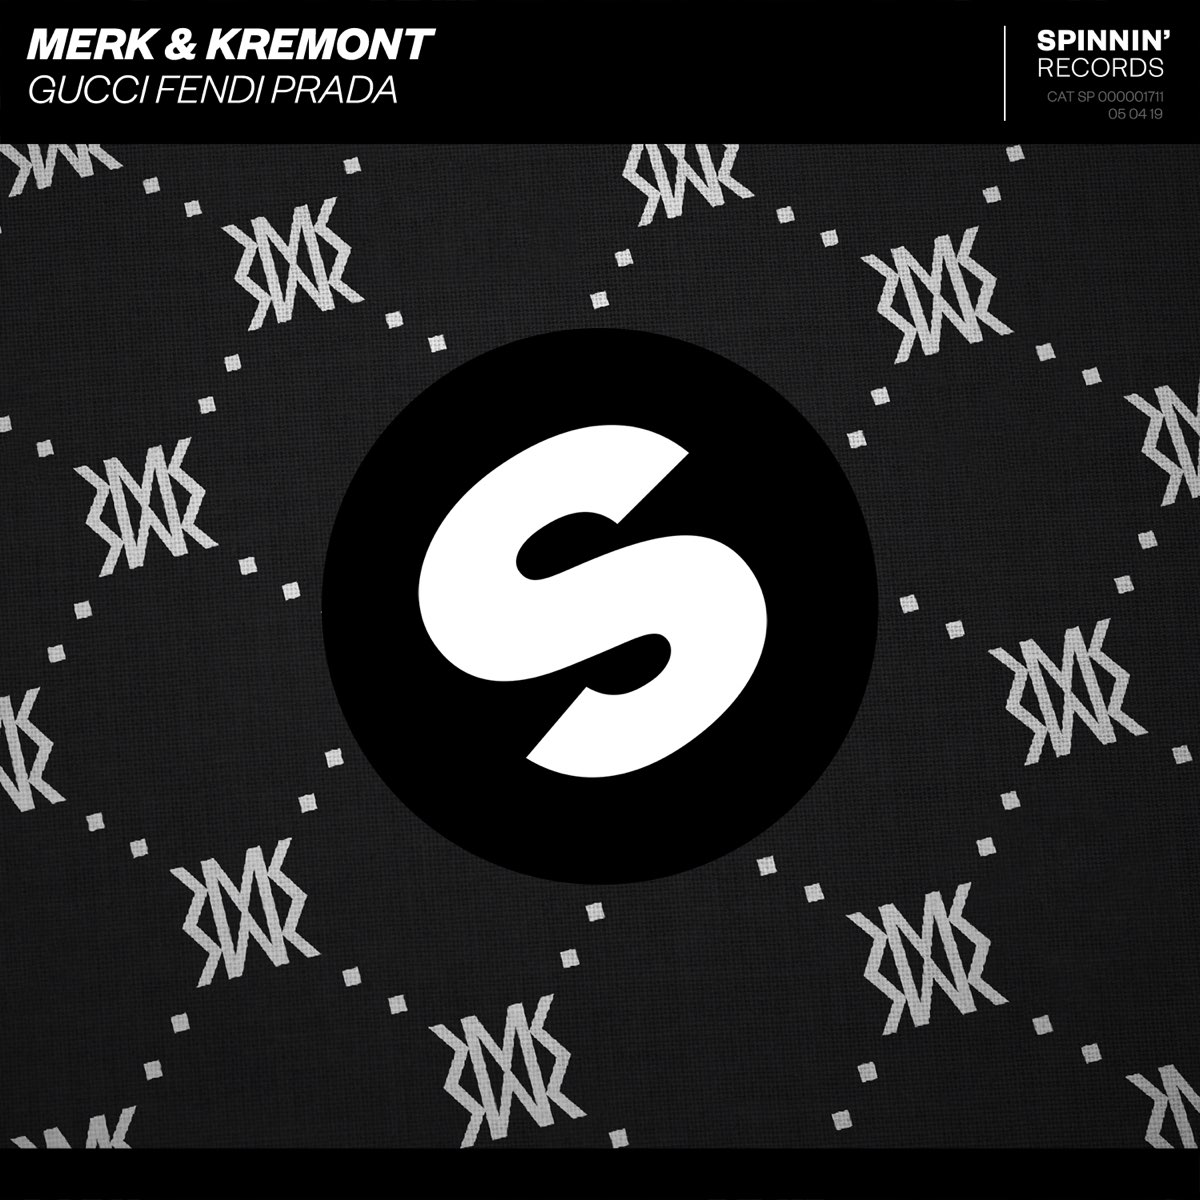 studie Mens krom Gucci Fendi Prada - Single by Merk & Kremont on iTunes